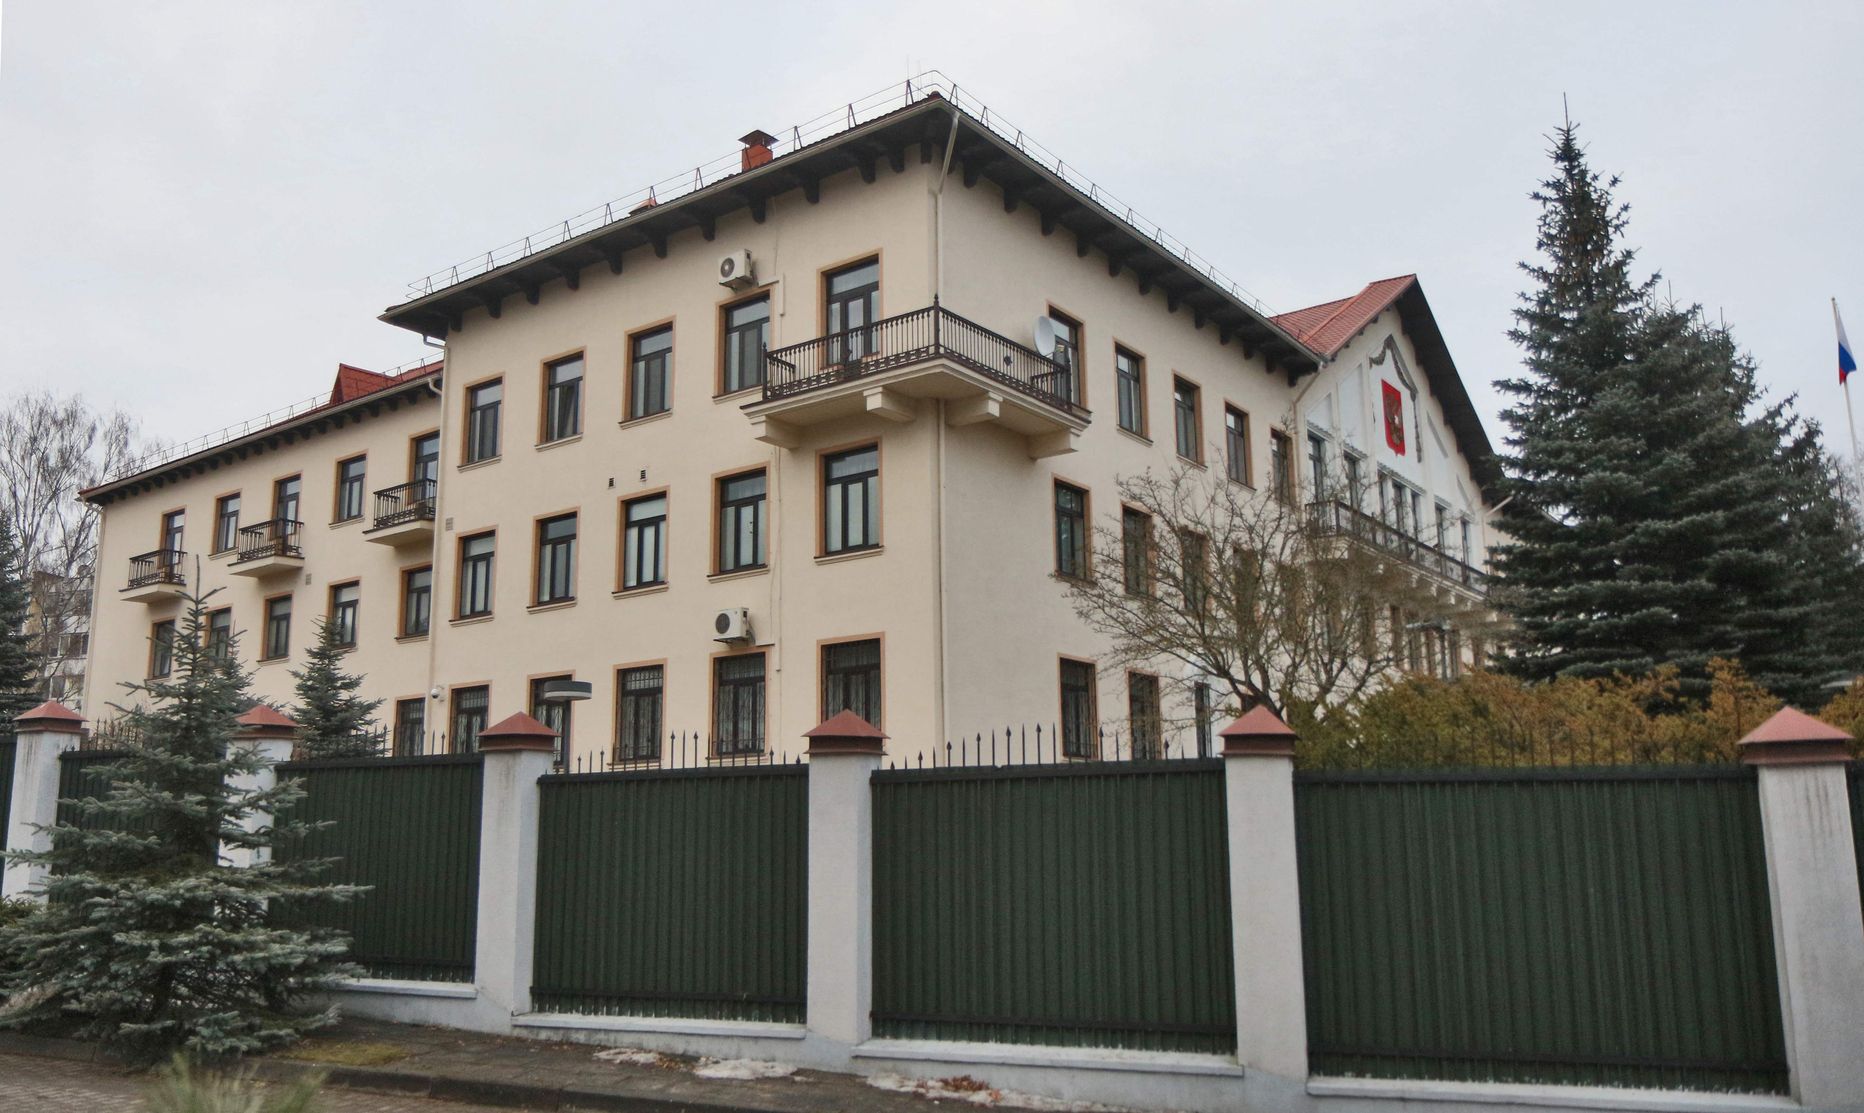 Venemaa saatkond Vilniuses.